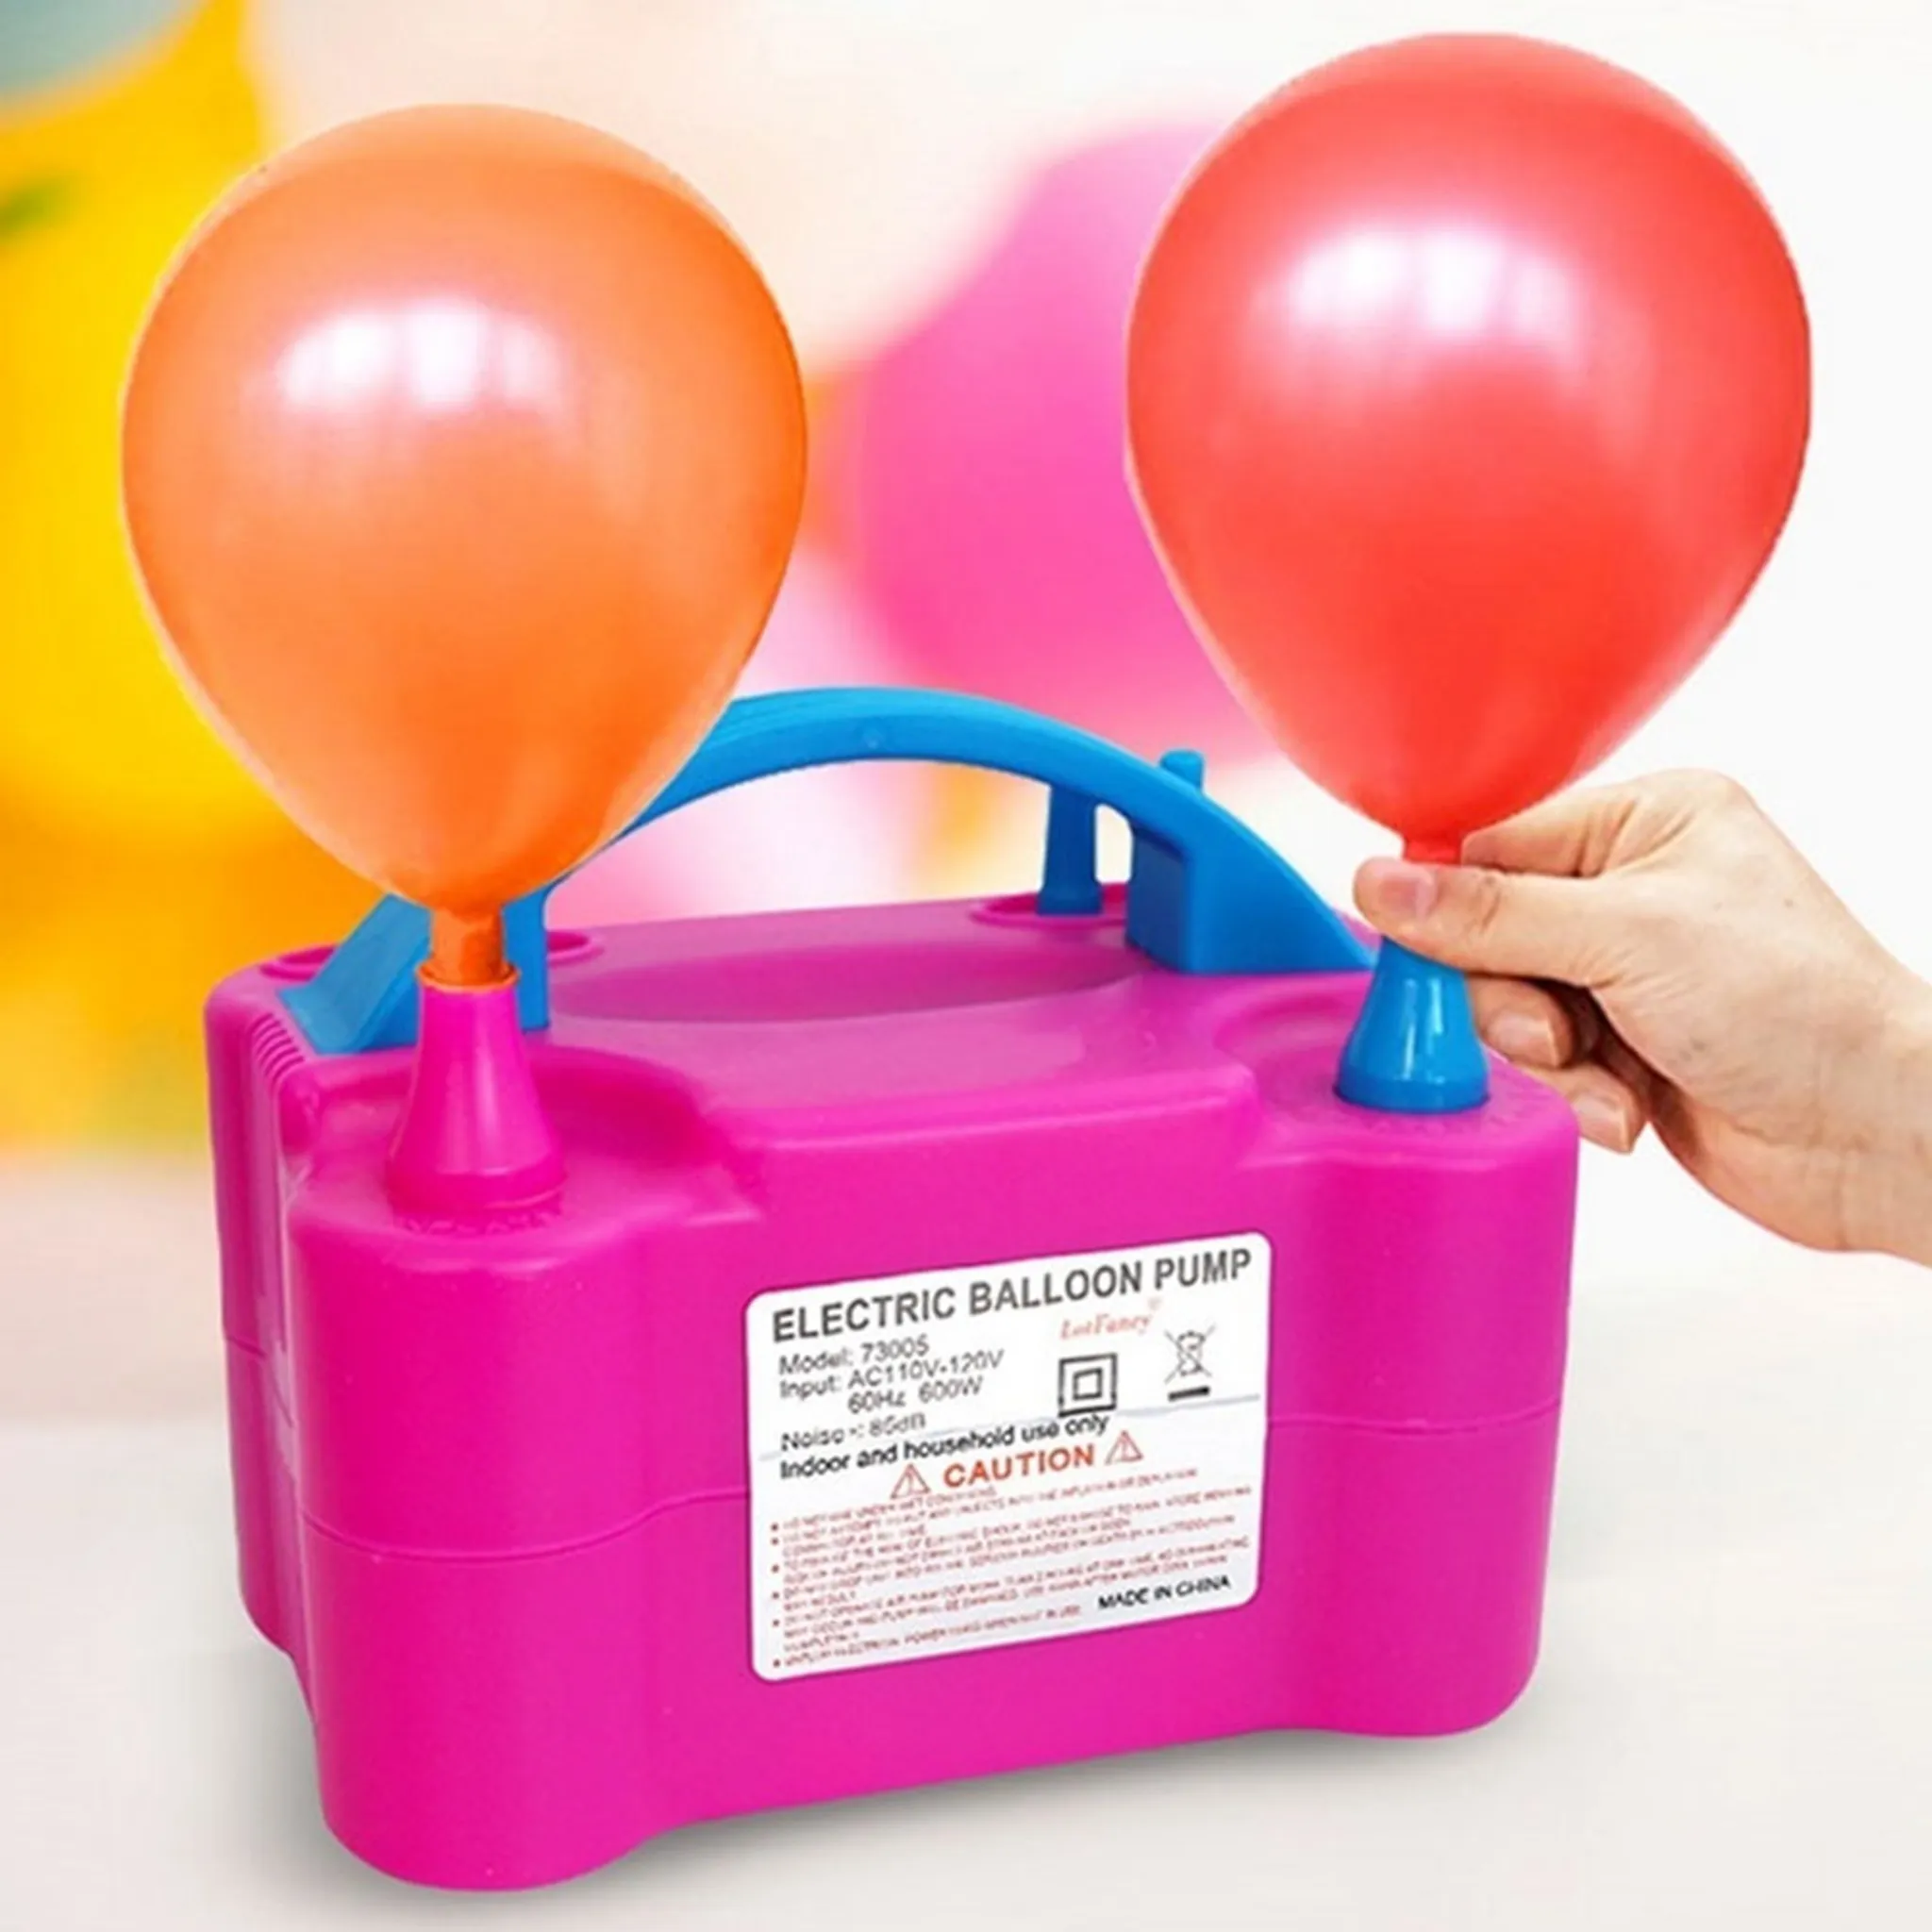 Luftballon Pumpe, Luftblasgerät, Ballon-Aufblasgerät